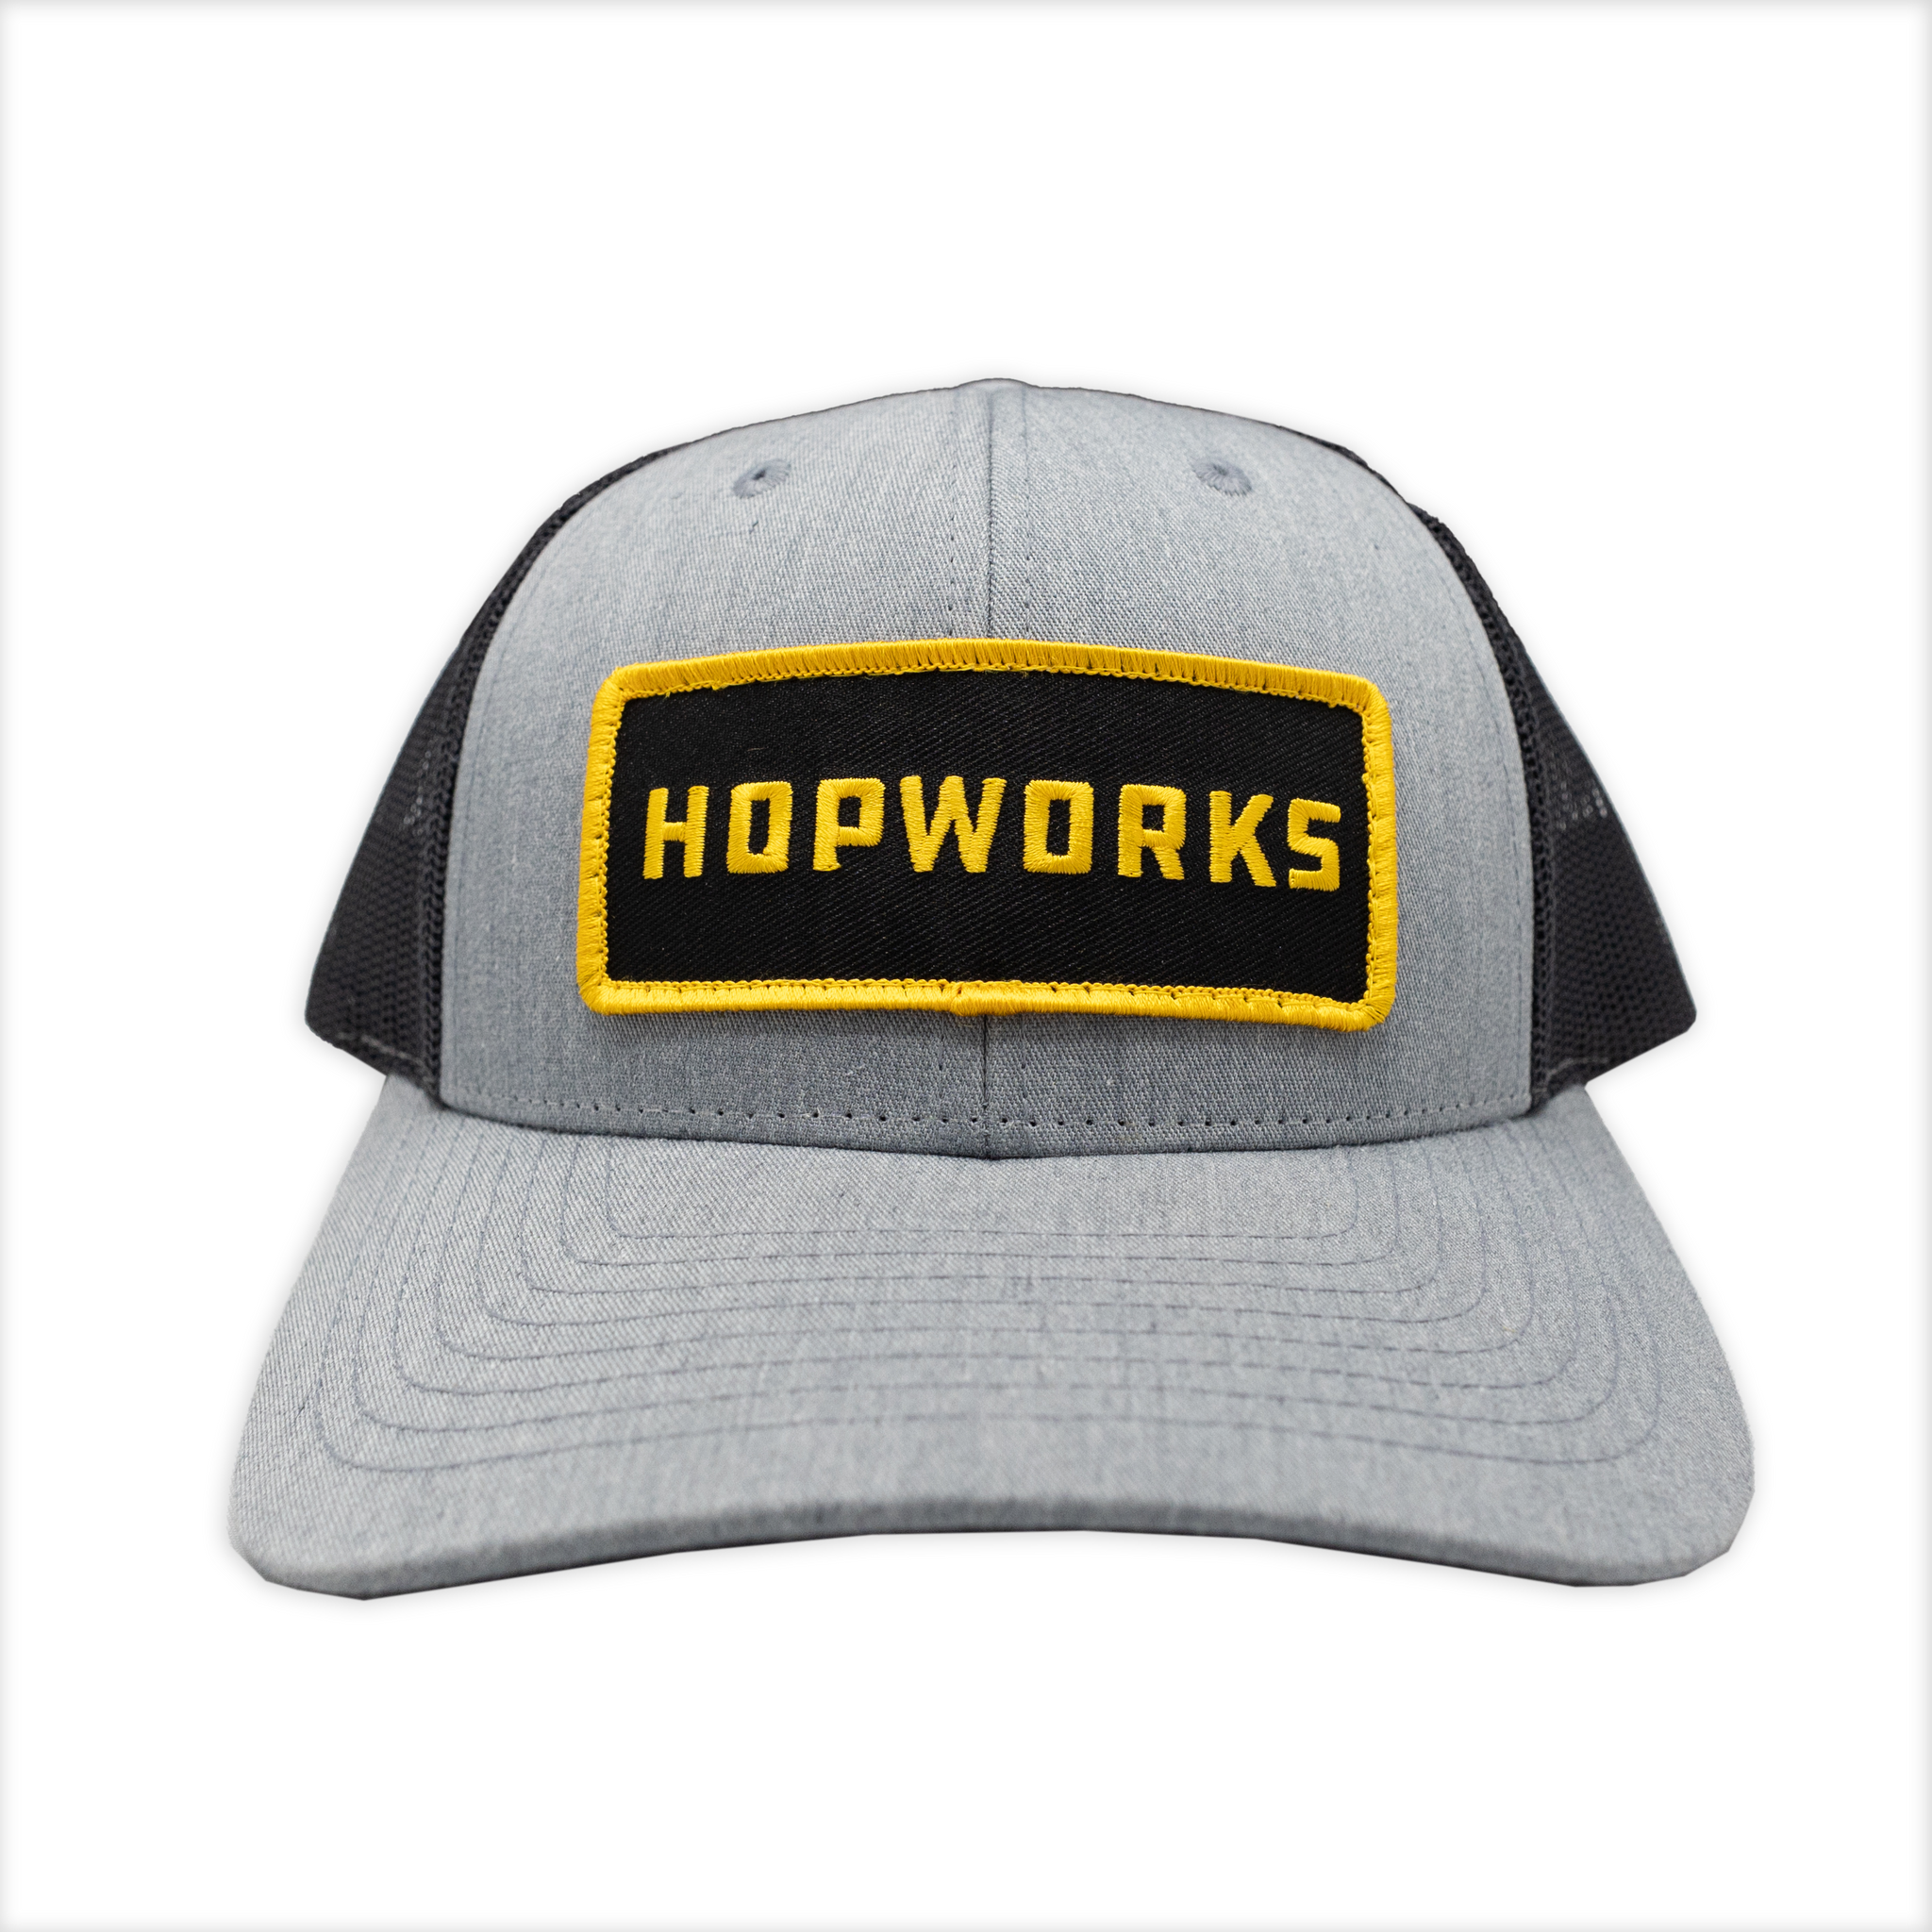 Hopworks Low-Pro Patch Trucker